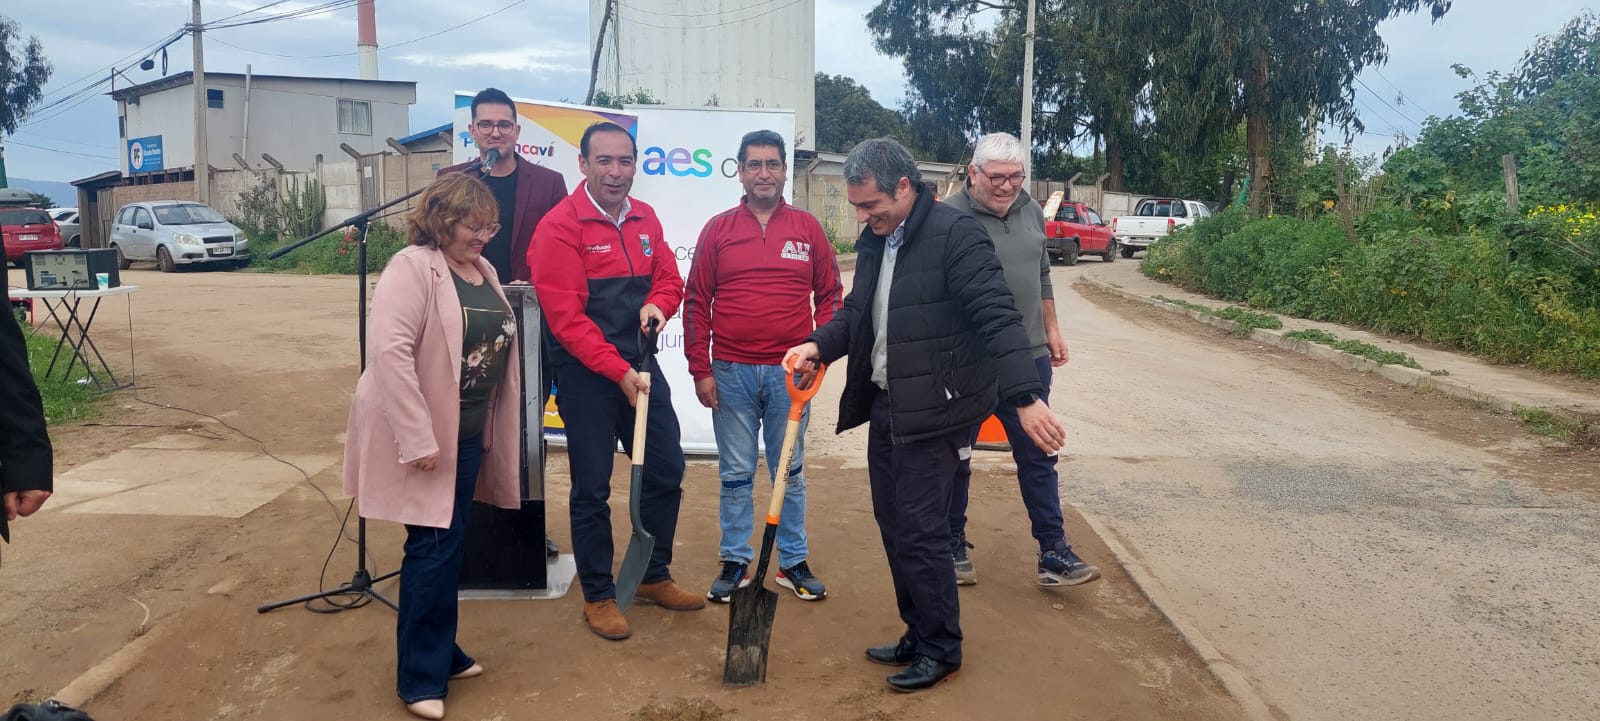 Con apoyo de AES Chile: Pavimentación de importante vía beneficiará a vecinos de Puchuncaví